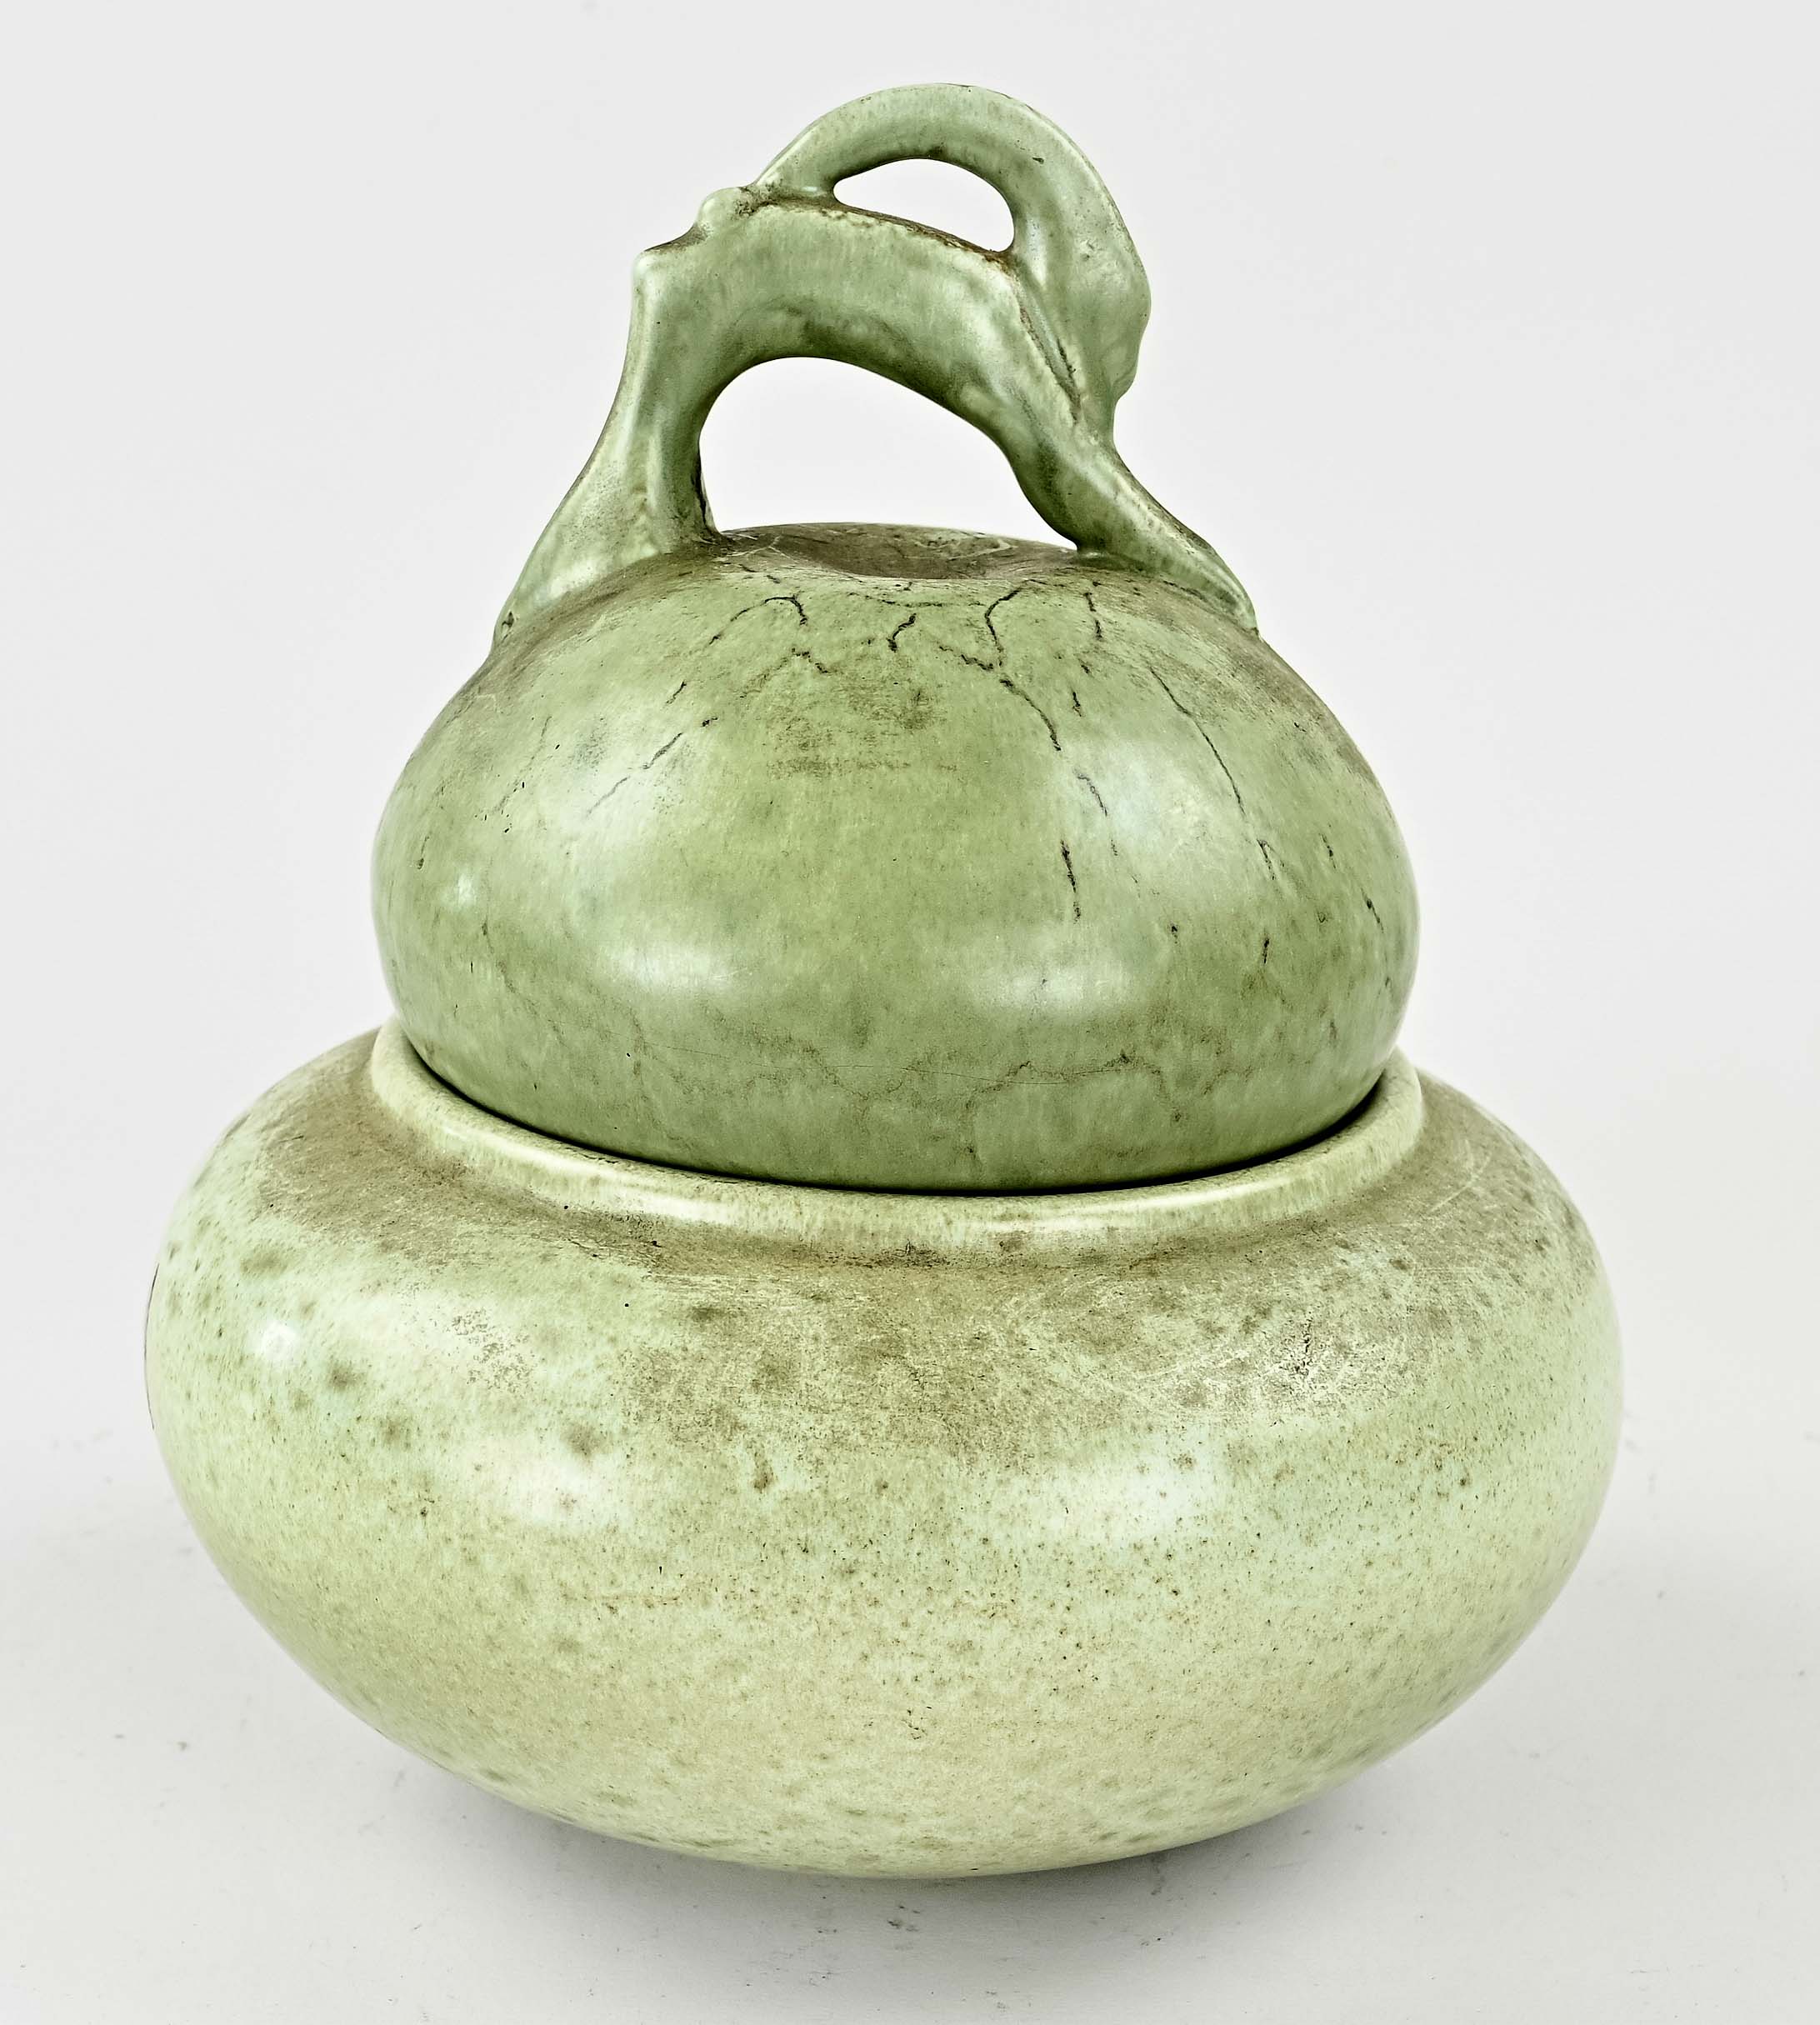 Platelen Eskaf lidded pot, 1930 - Image 2 of 3